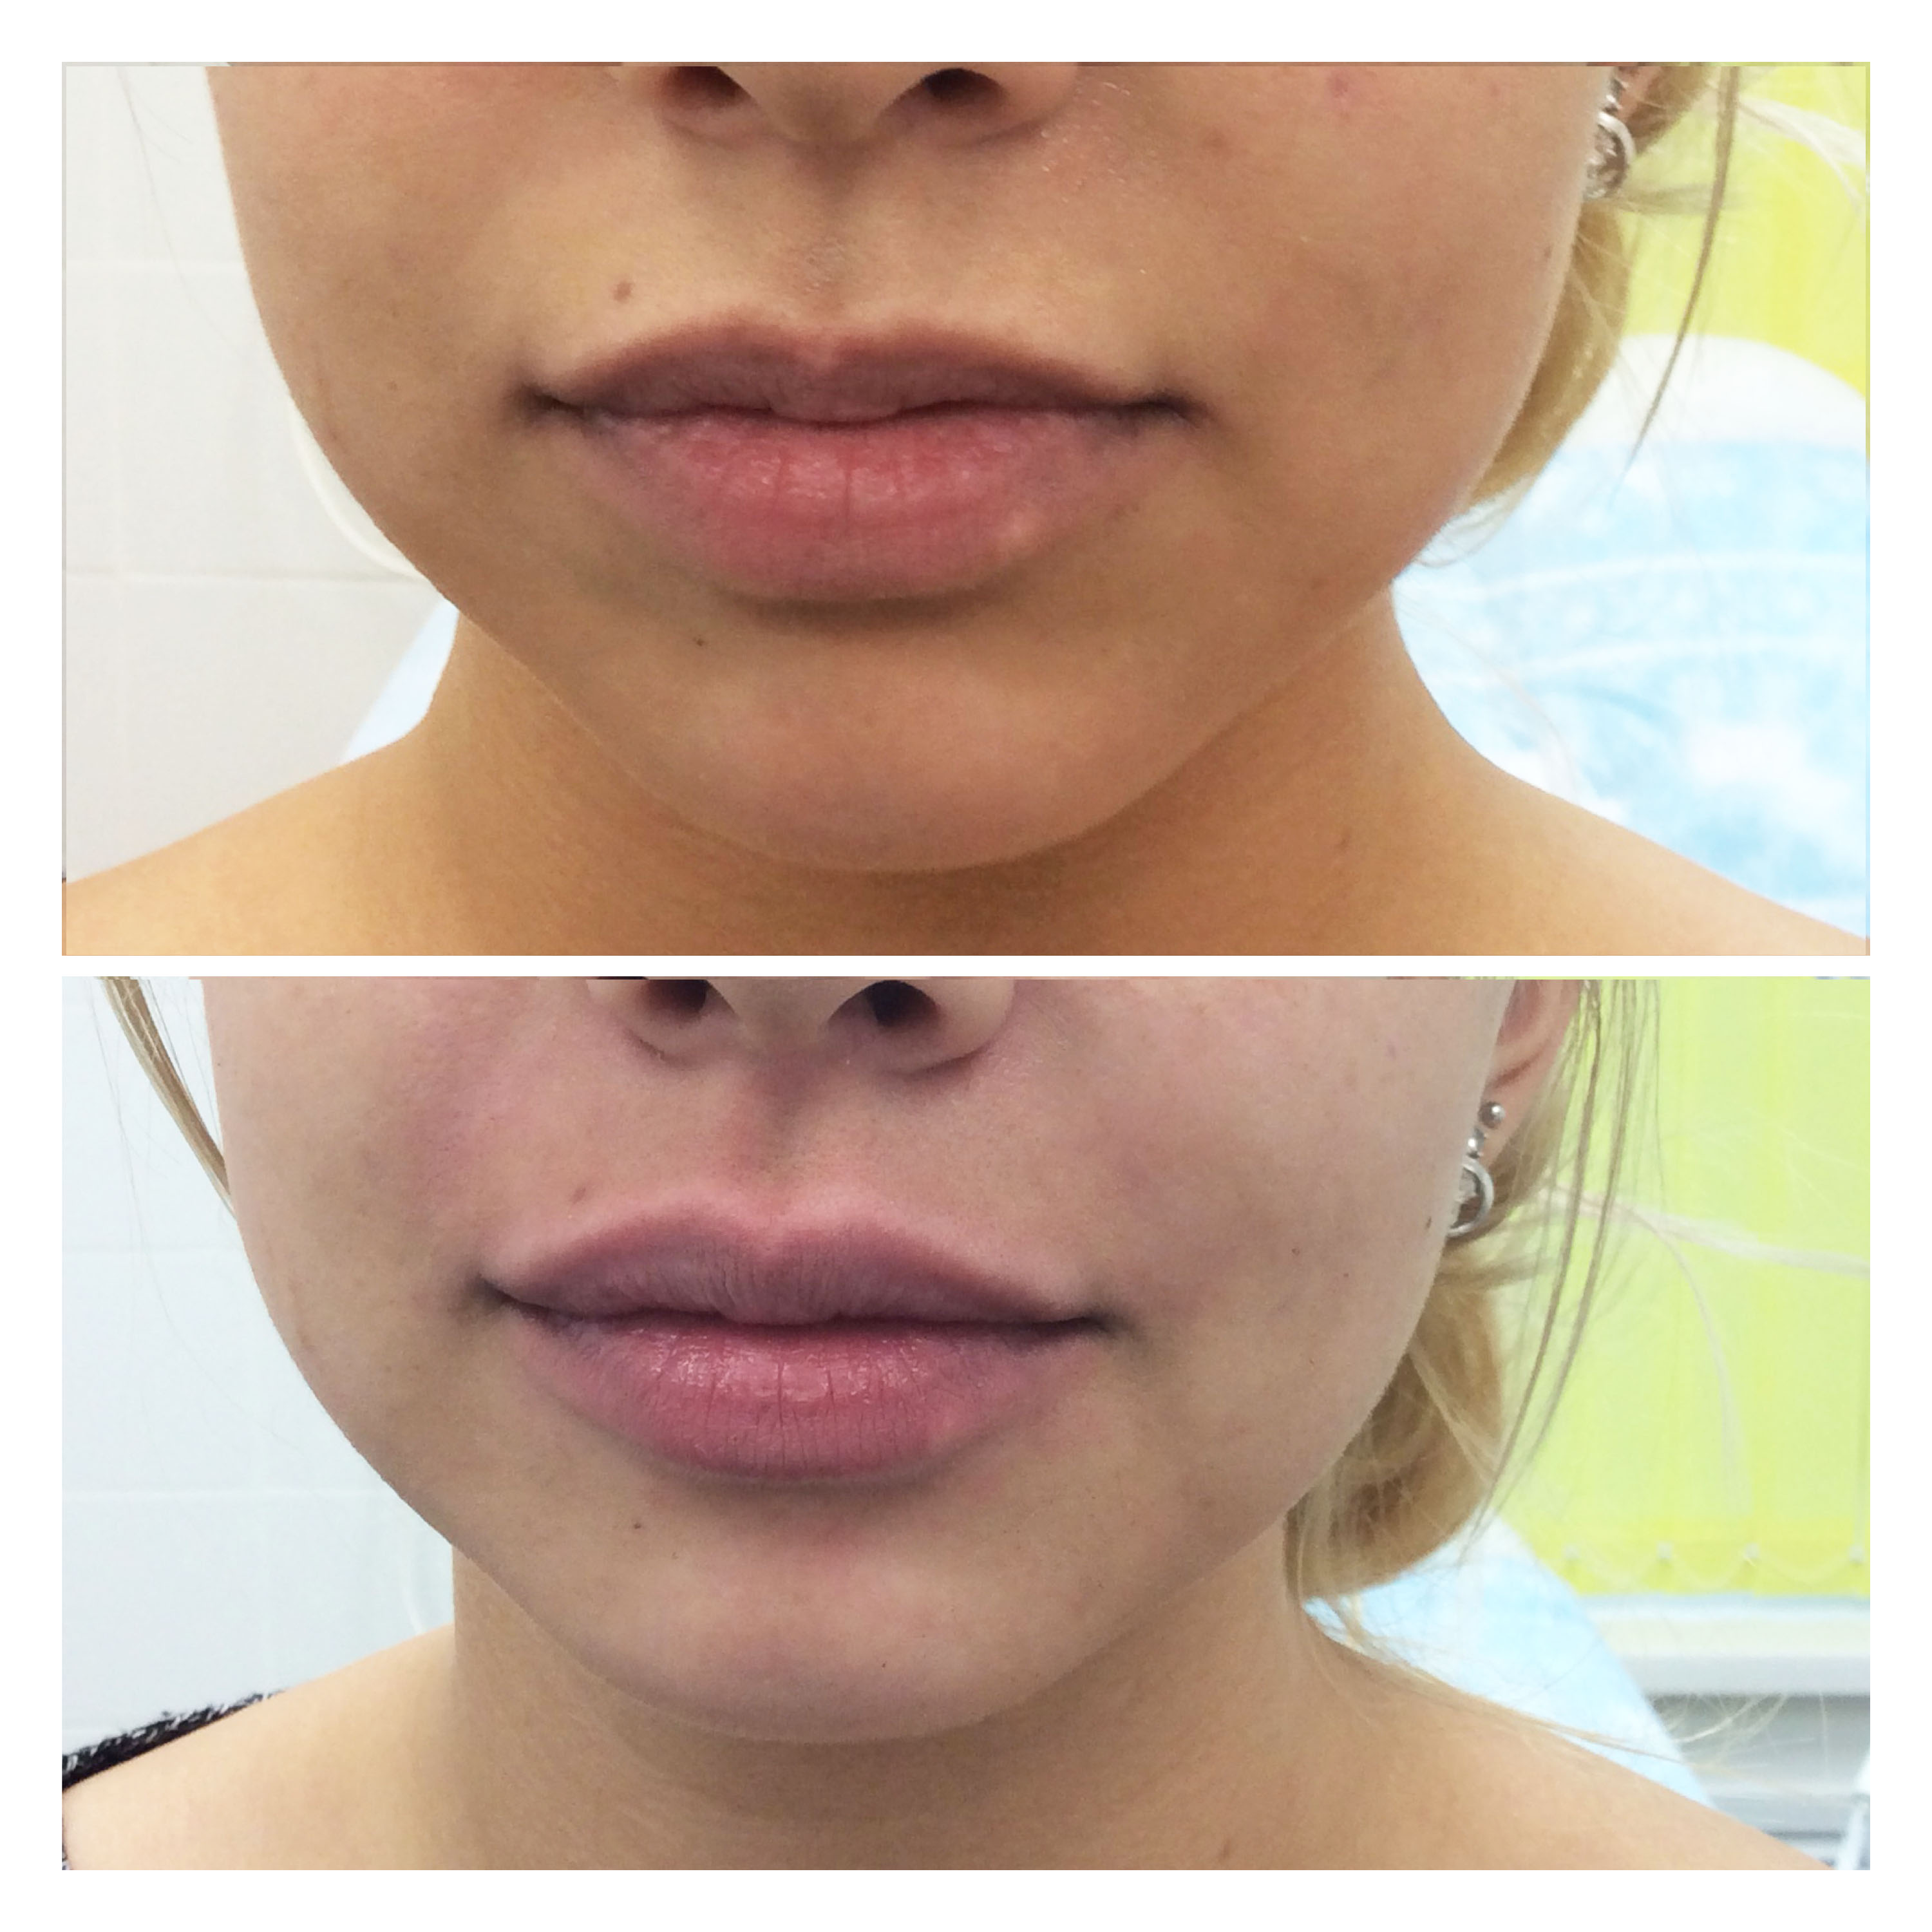 Гиалуроновая кислота в губы фото до и после